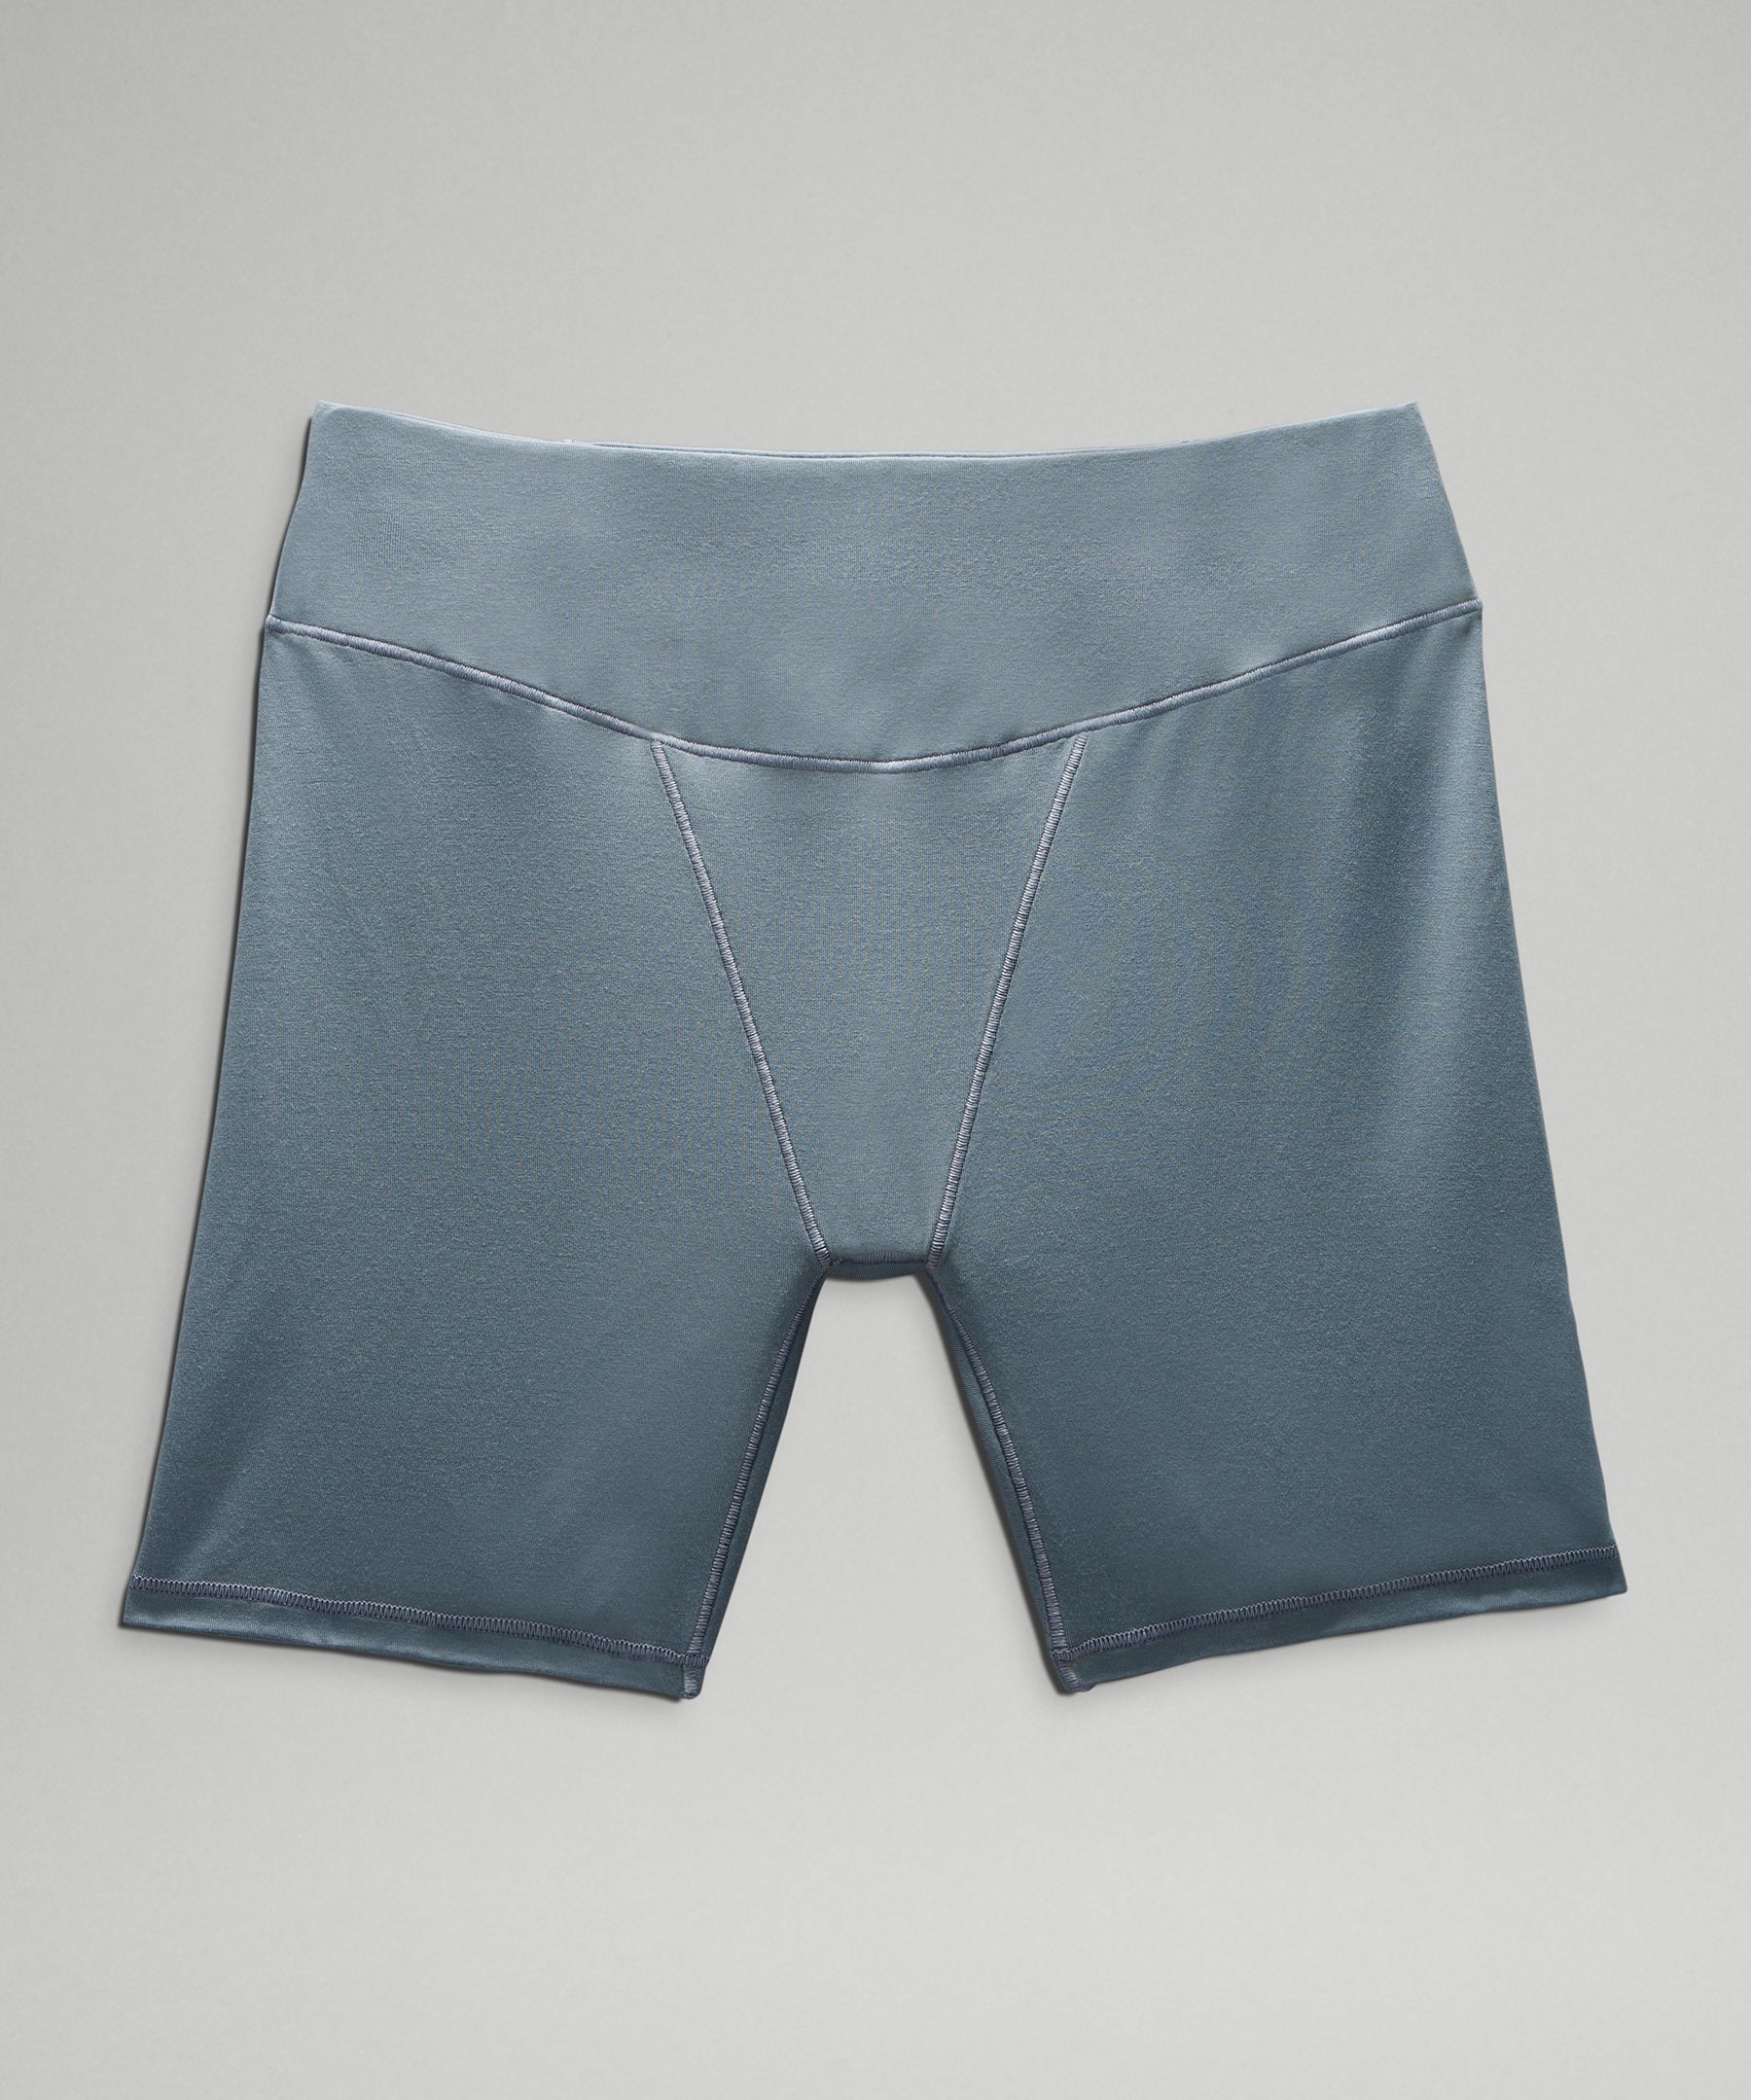 UnderEase Super-High-Rise Shortie Underwear, Women's Underwear